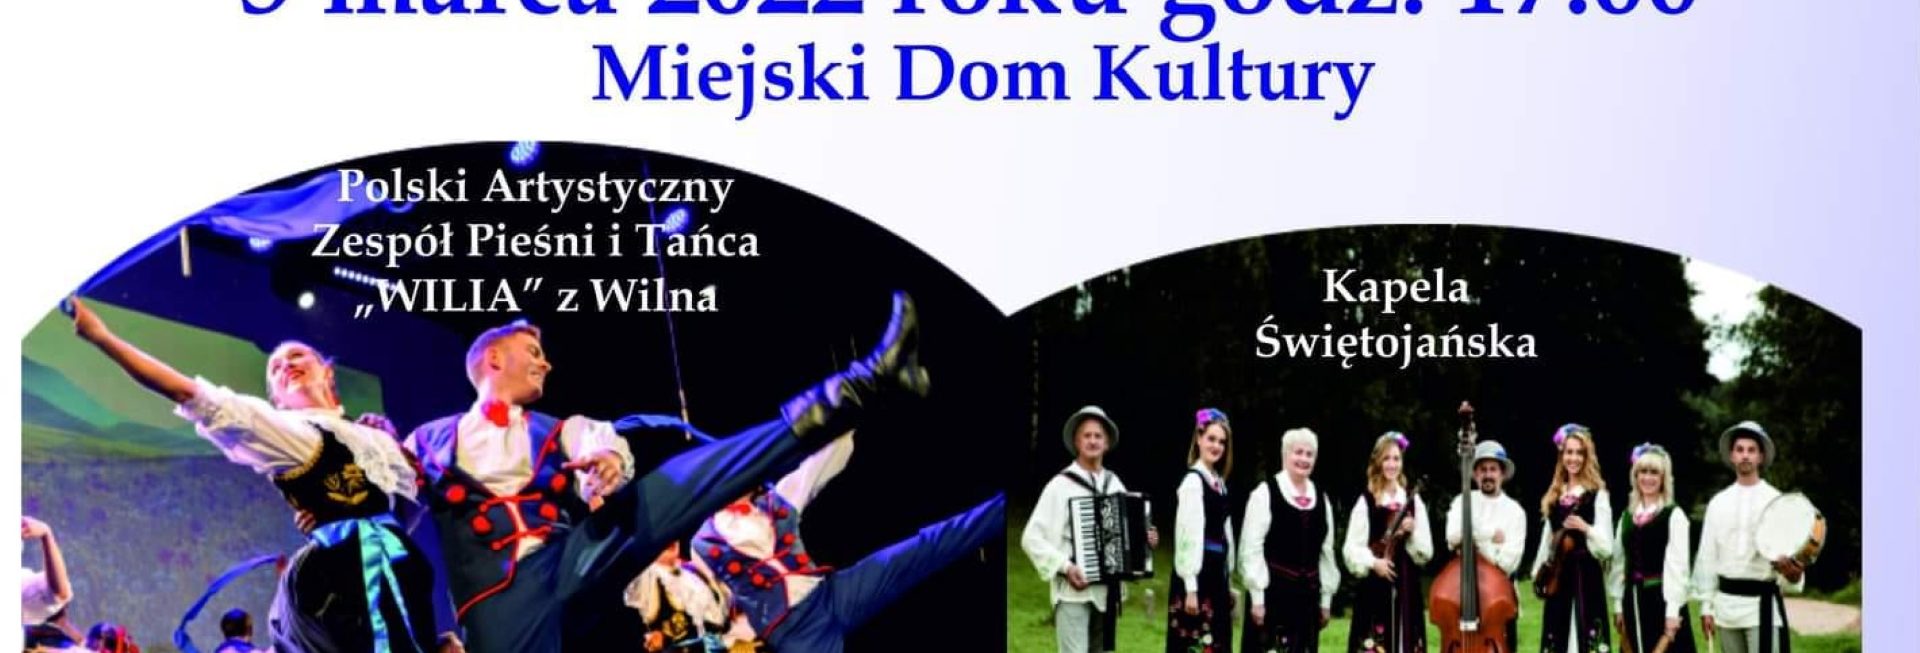 Plakat graficzny zapraszający na do Szczytna na koncert Kaziuki - Wilniuki Szczytno 2022.